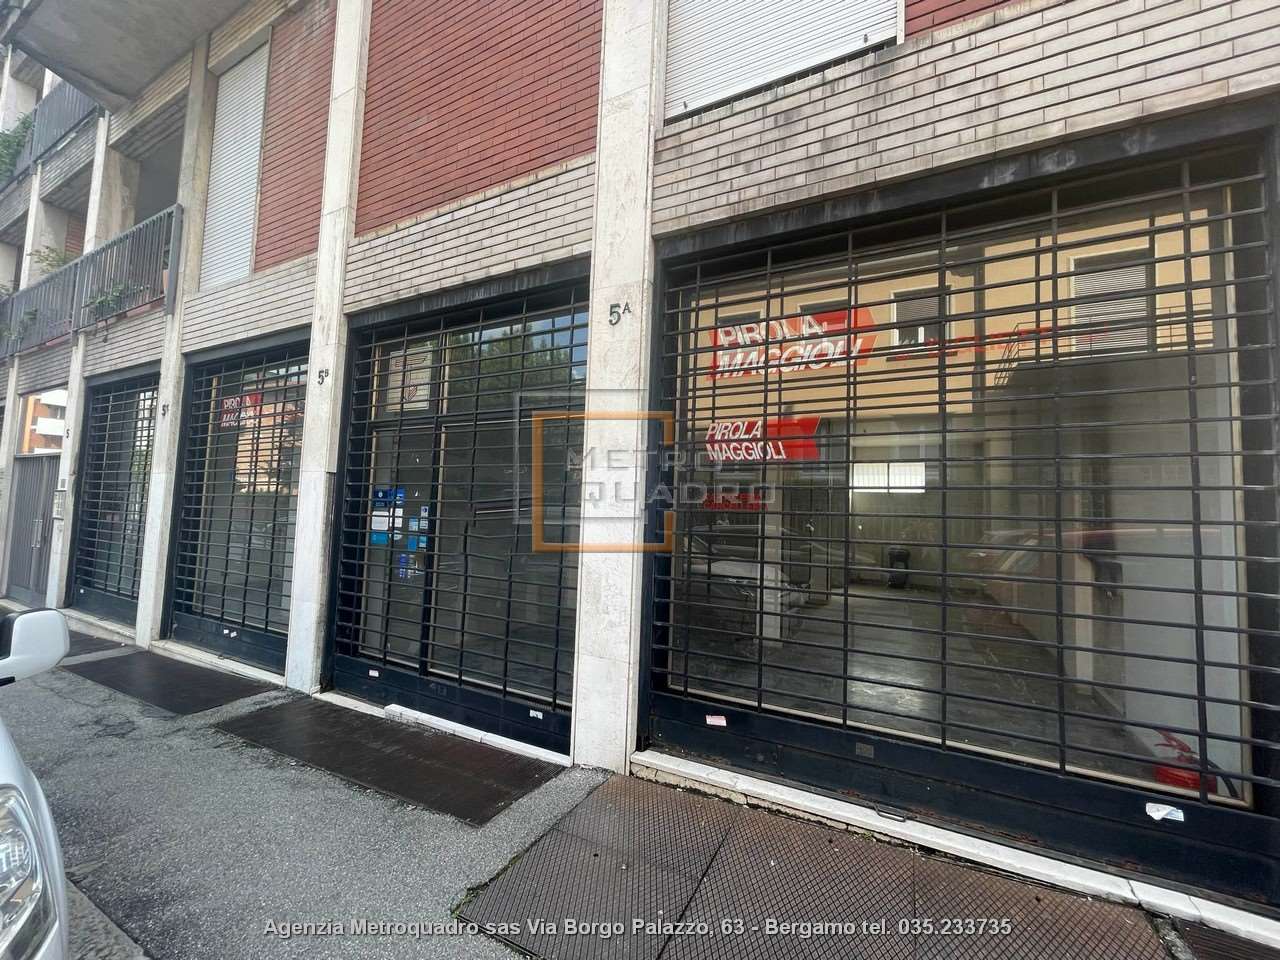 Vendita Negozio Commerciale/Industriale Bergamo 426452